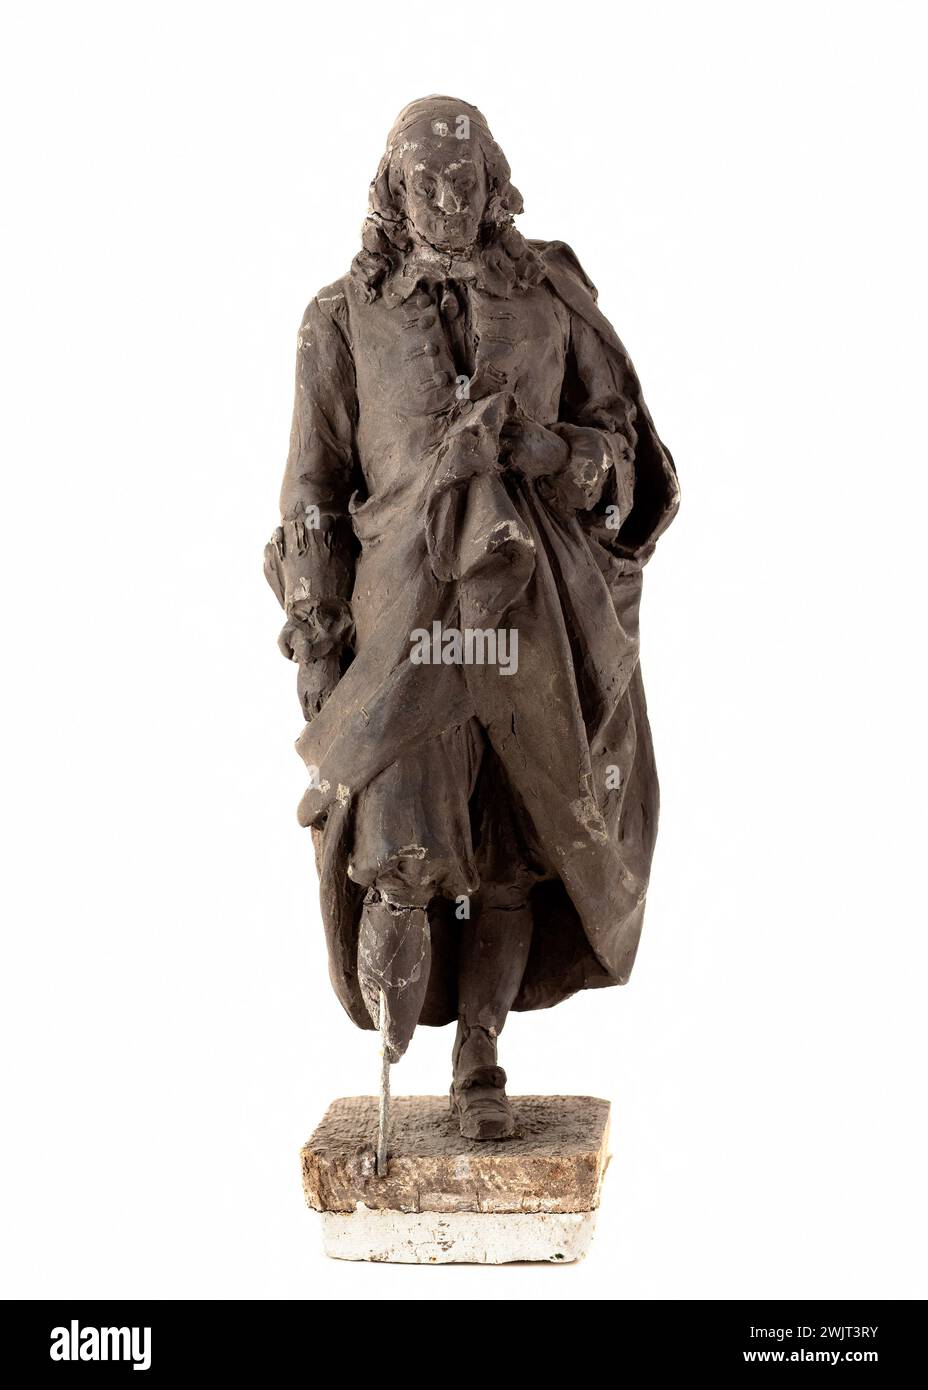 Henri Allouard (1844-1929). Porträt von Pierre Corneille (1606-1684), Dramatiker. Wachs, 1880-1900. Paris, Carnavalet Museum. 60823-7 Wachs, französischer Dramatiker, Schriftsteller, Statue Stockfoto